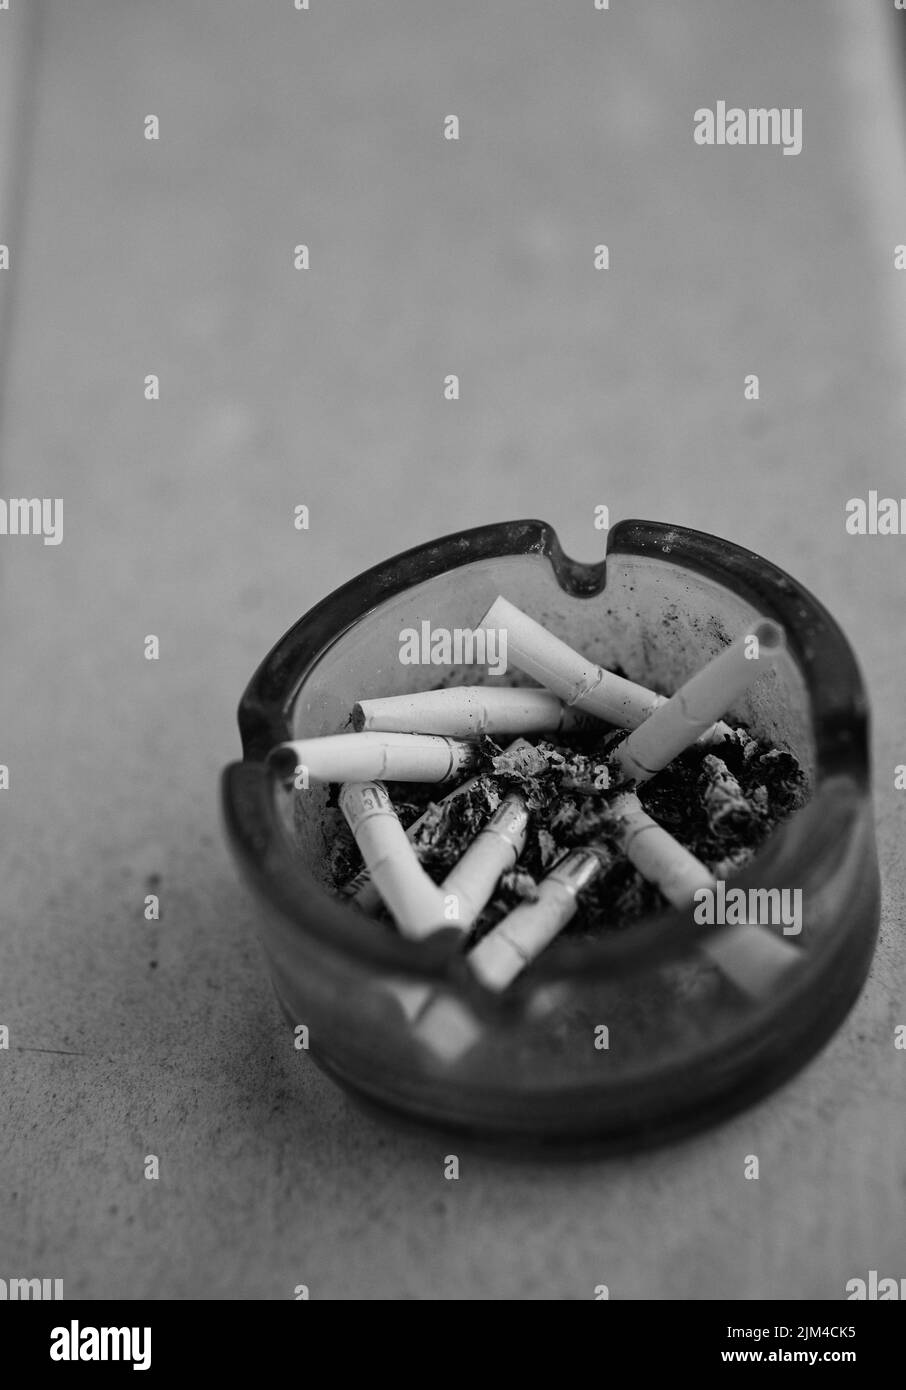 Aschenbecher mit zigarette Schwarzweiß-Stockfotos und -bilder - Alamy